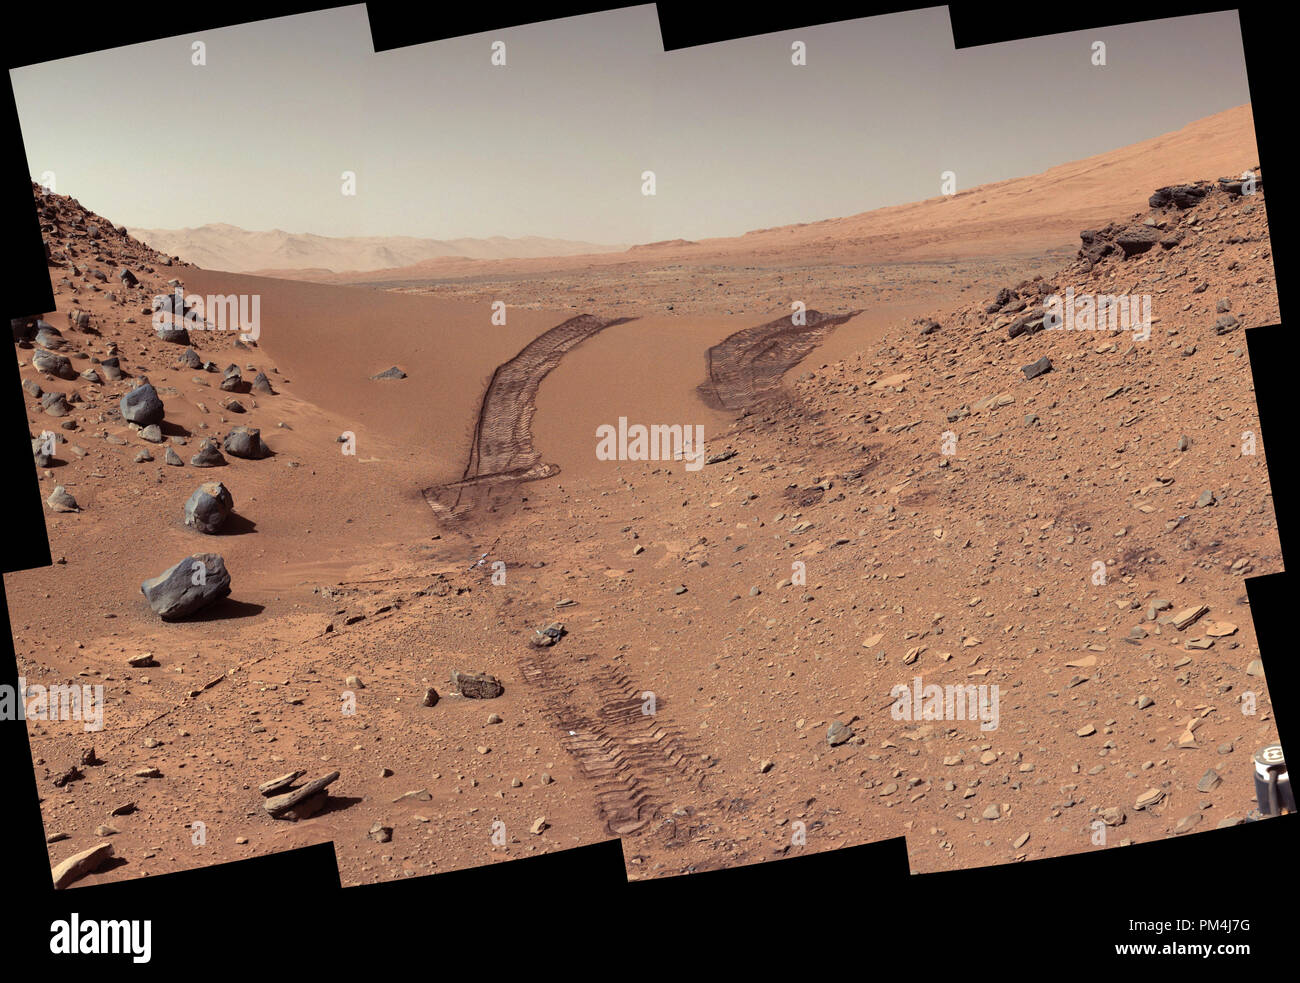 Questo sguardo indietro a una duna che la NASA la curiosità di Mars rover ha guidato in tutta è stata presa dal rover della fotocamera del montante (Mastcam) durante il 538th giorno Martian, o sol, di curiosità di lavoro su Marte (feb. 9, 2014). Il rover aveva guidato oltre le dune tre giorni prima. Per la scala, la distanza tra le parallele le tracce delle ruote è di circa 9 piedi (2,7 metri). La duna è di circa 3 metri (1 metro) alta nel mezzo della sua span attraverso un' apertura chiamato 'Dingo Gap". Questa vista è guardando verso est. L'immagine è stata equilibrata in bianco per mostrare che cosa la superficie marziana materiali sarebbe simile se sotto la luce della terra' Foto Stock